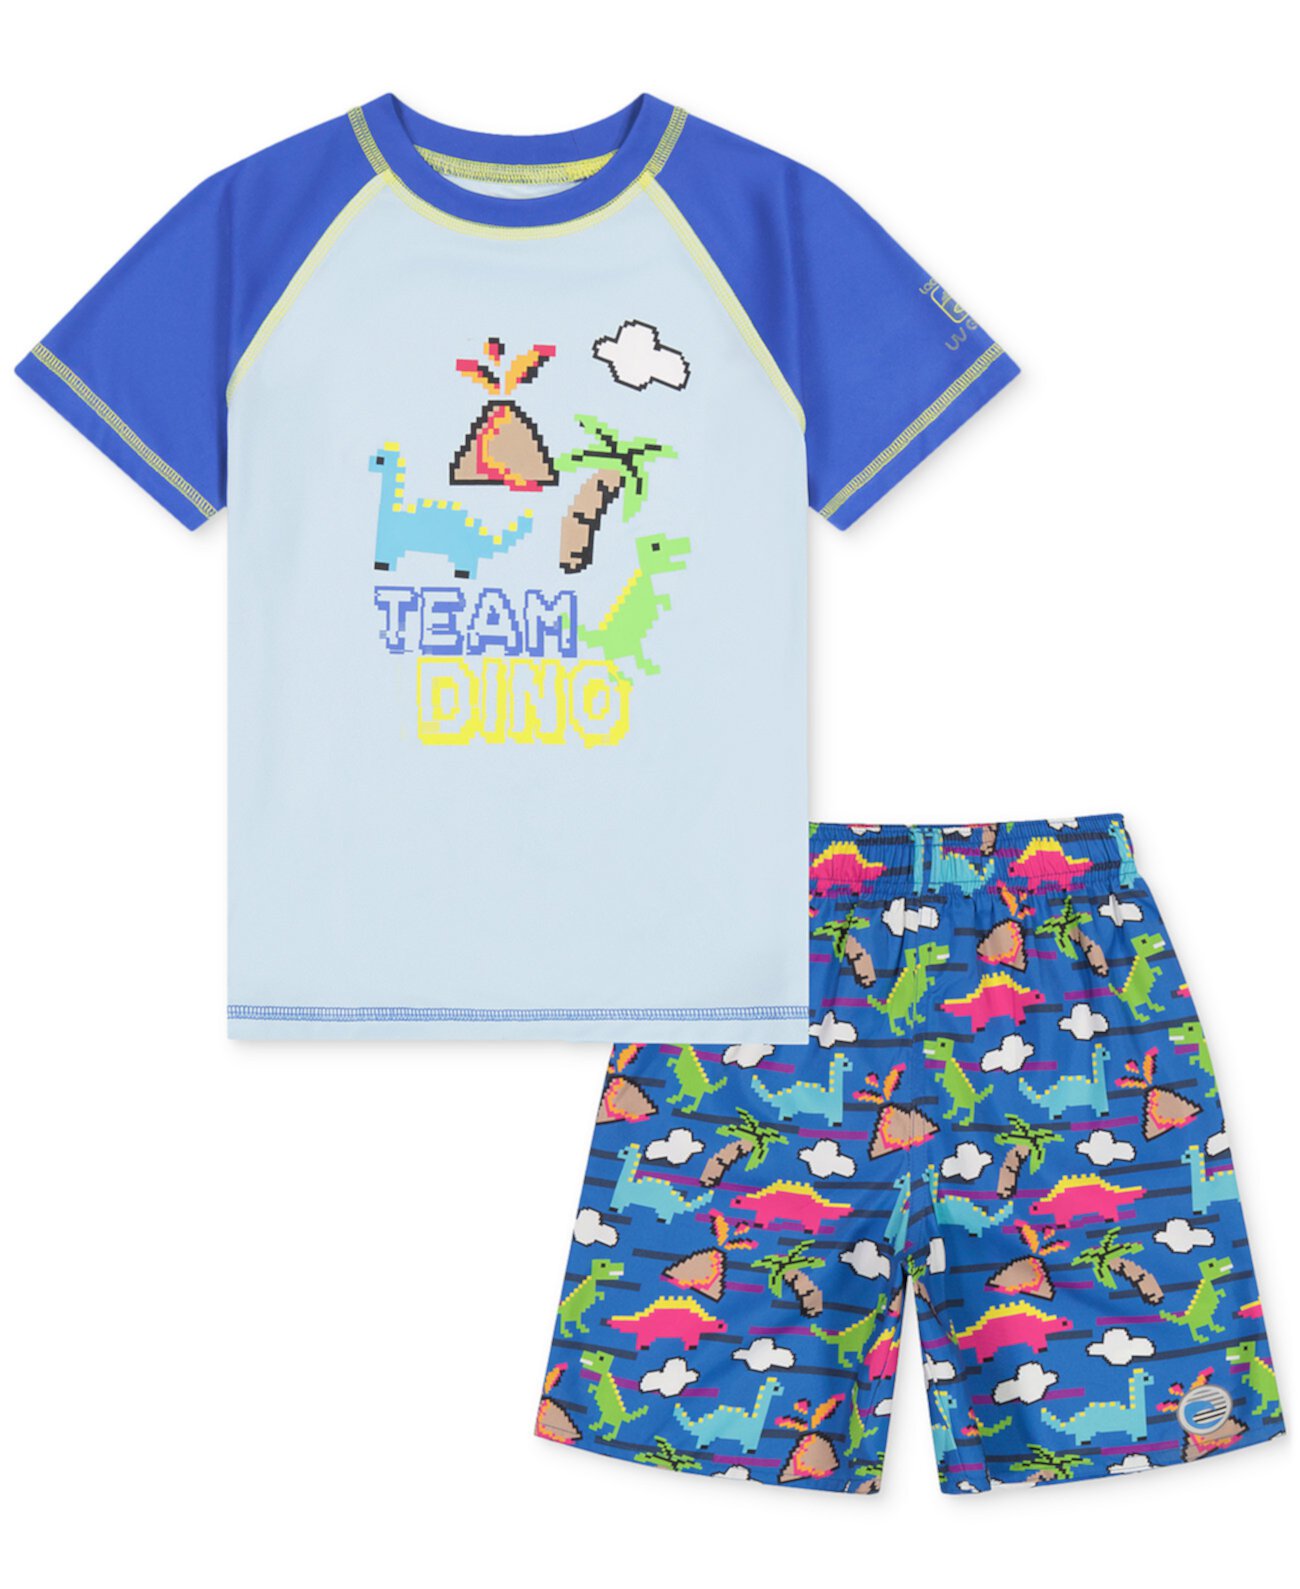 Топ для плавания Little Boys Team Dino Video и шорты для плавания с принтом, комплект из 2 предметов Laguna